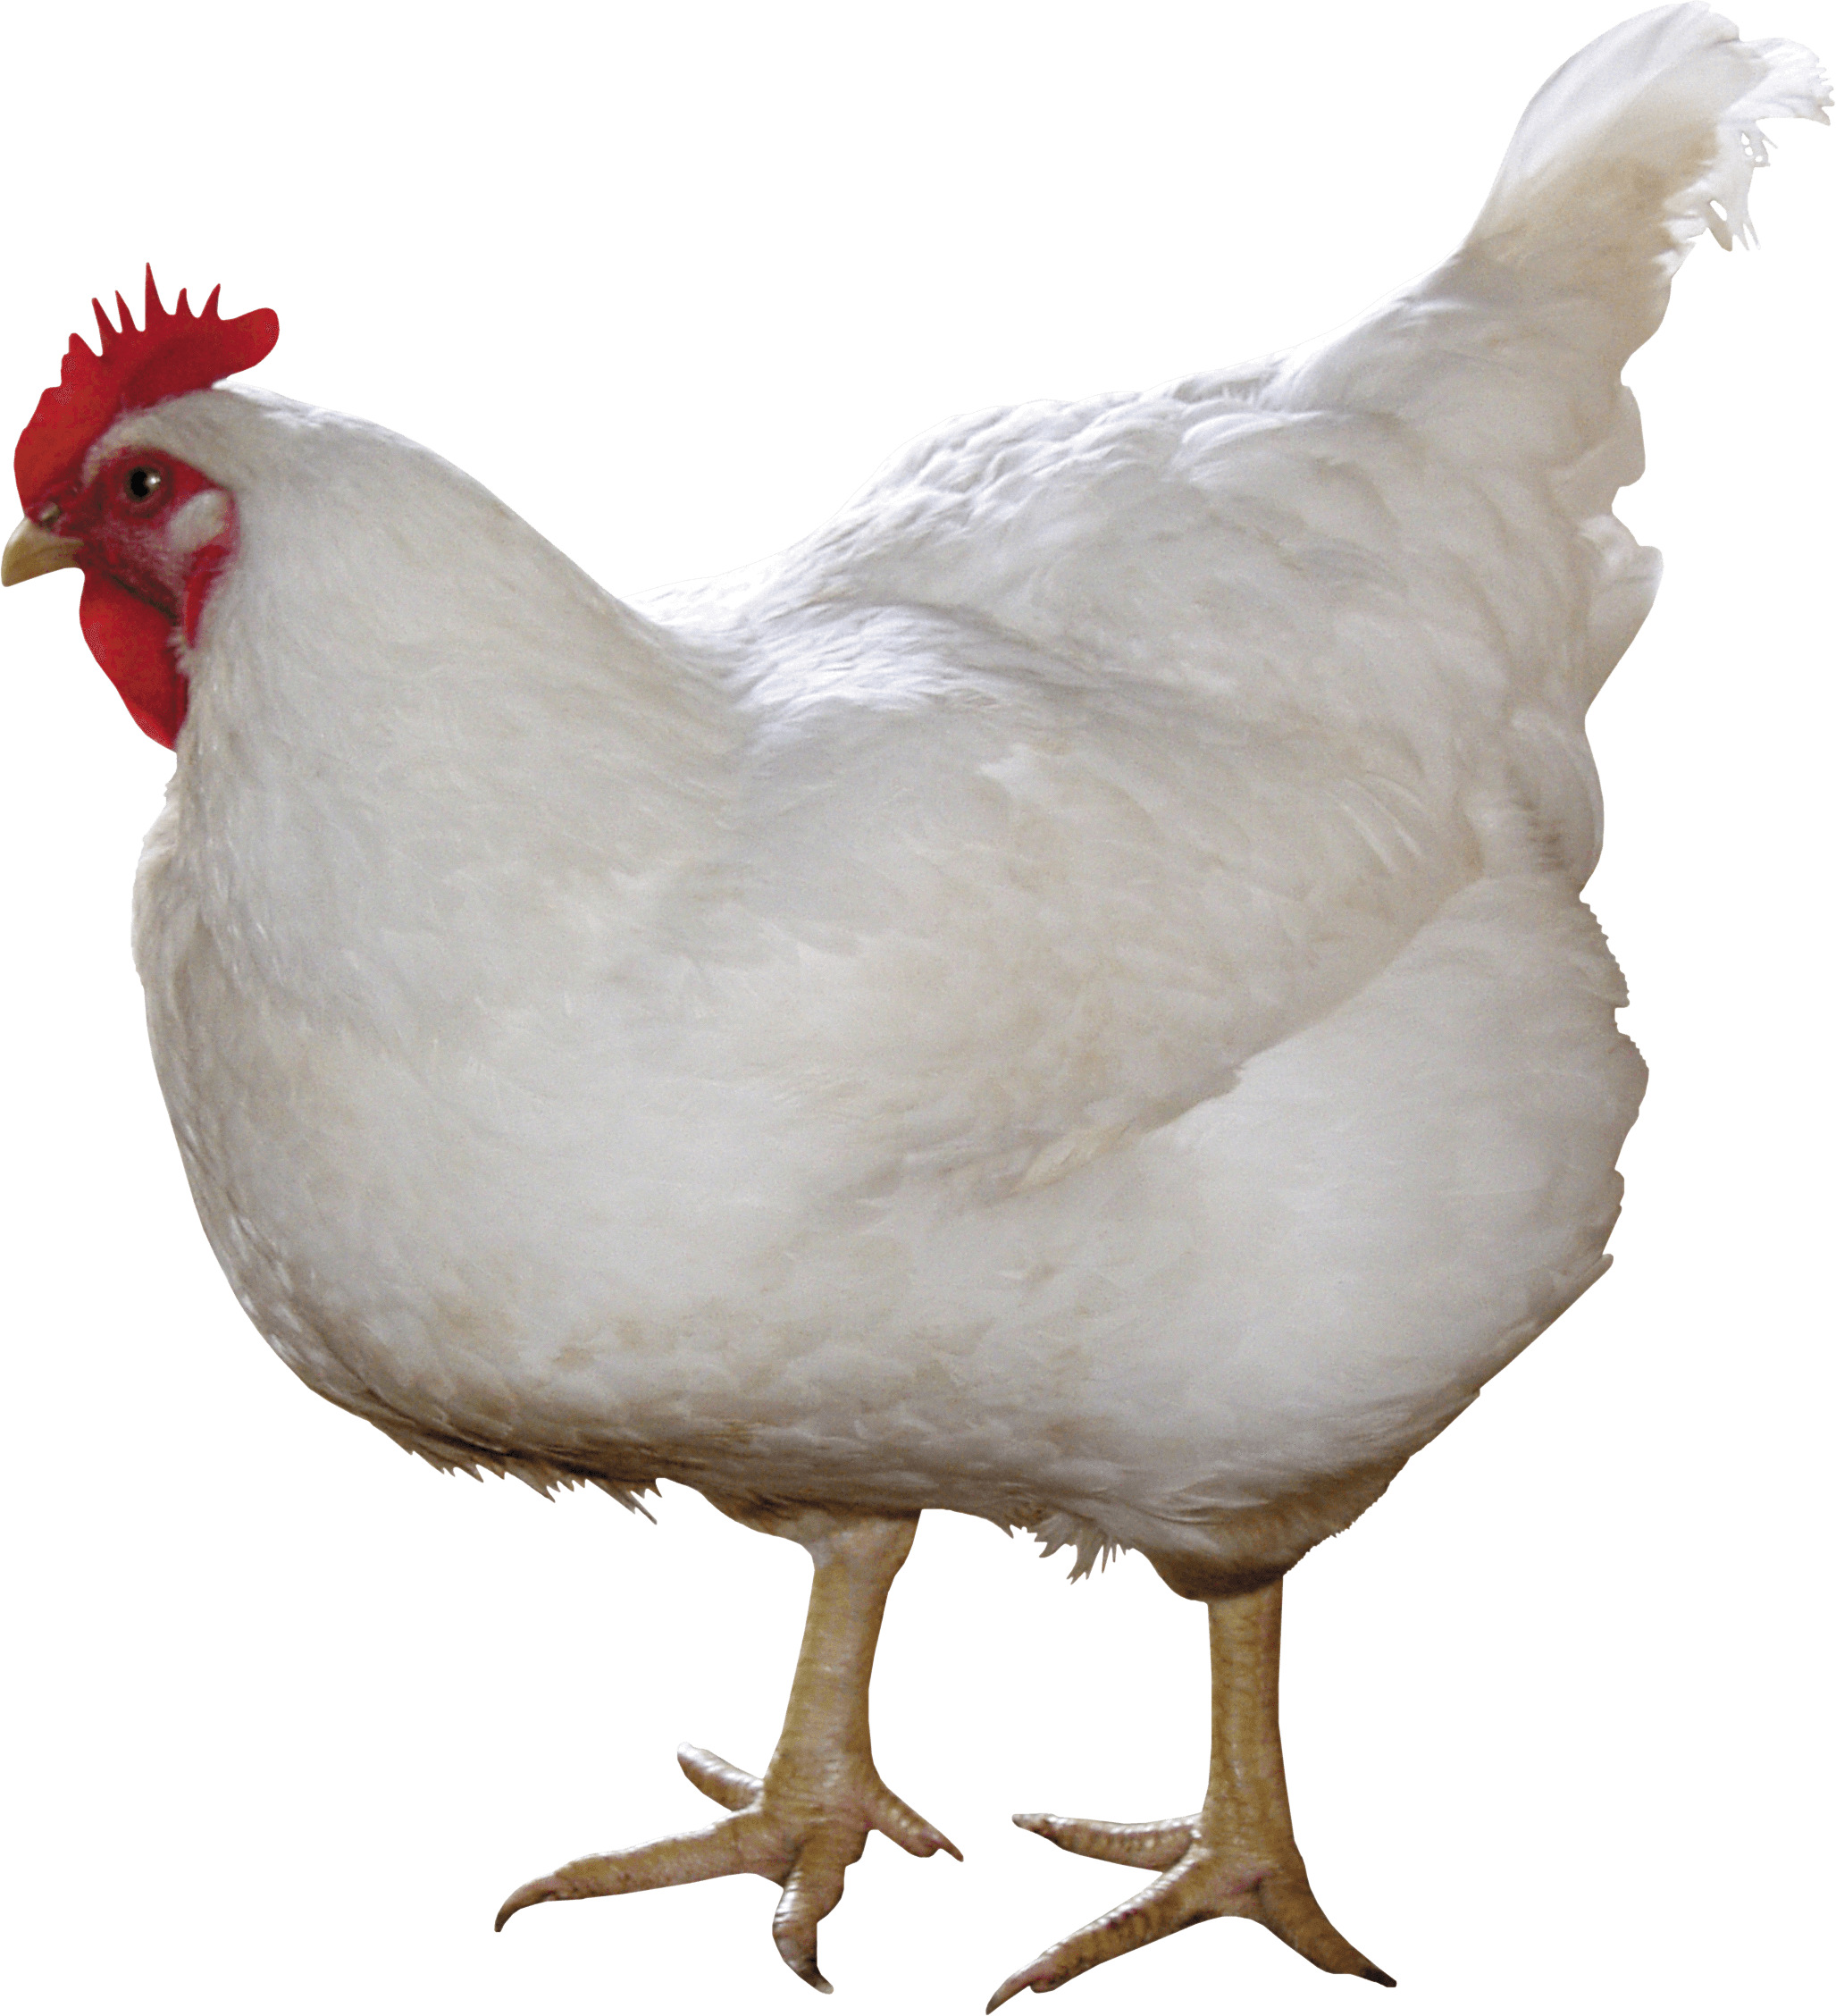 Chicken PNG image - Chicken P